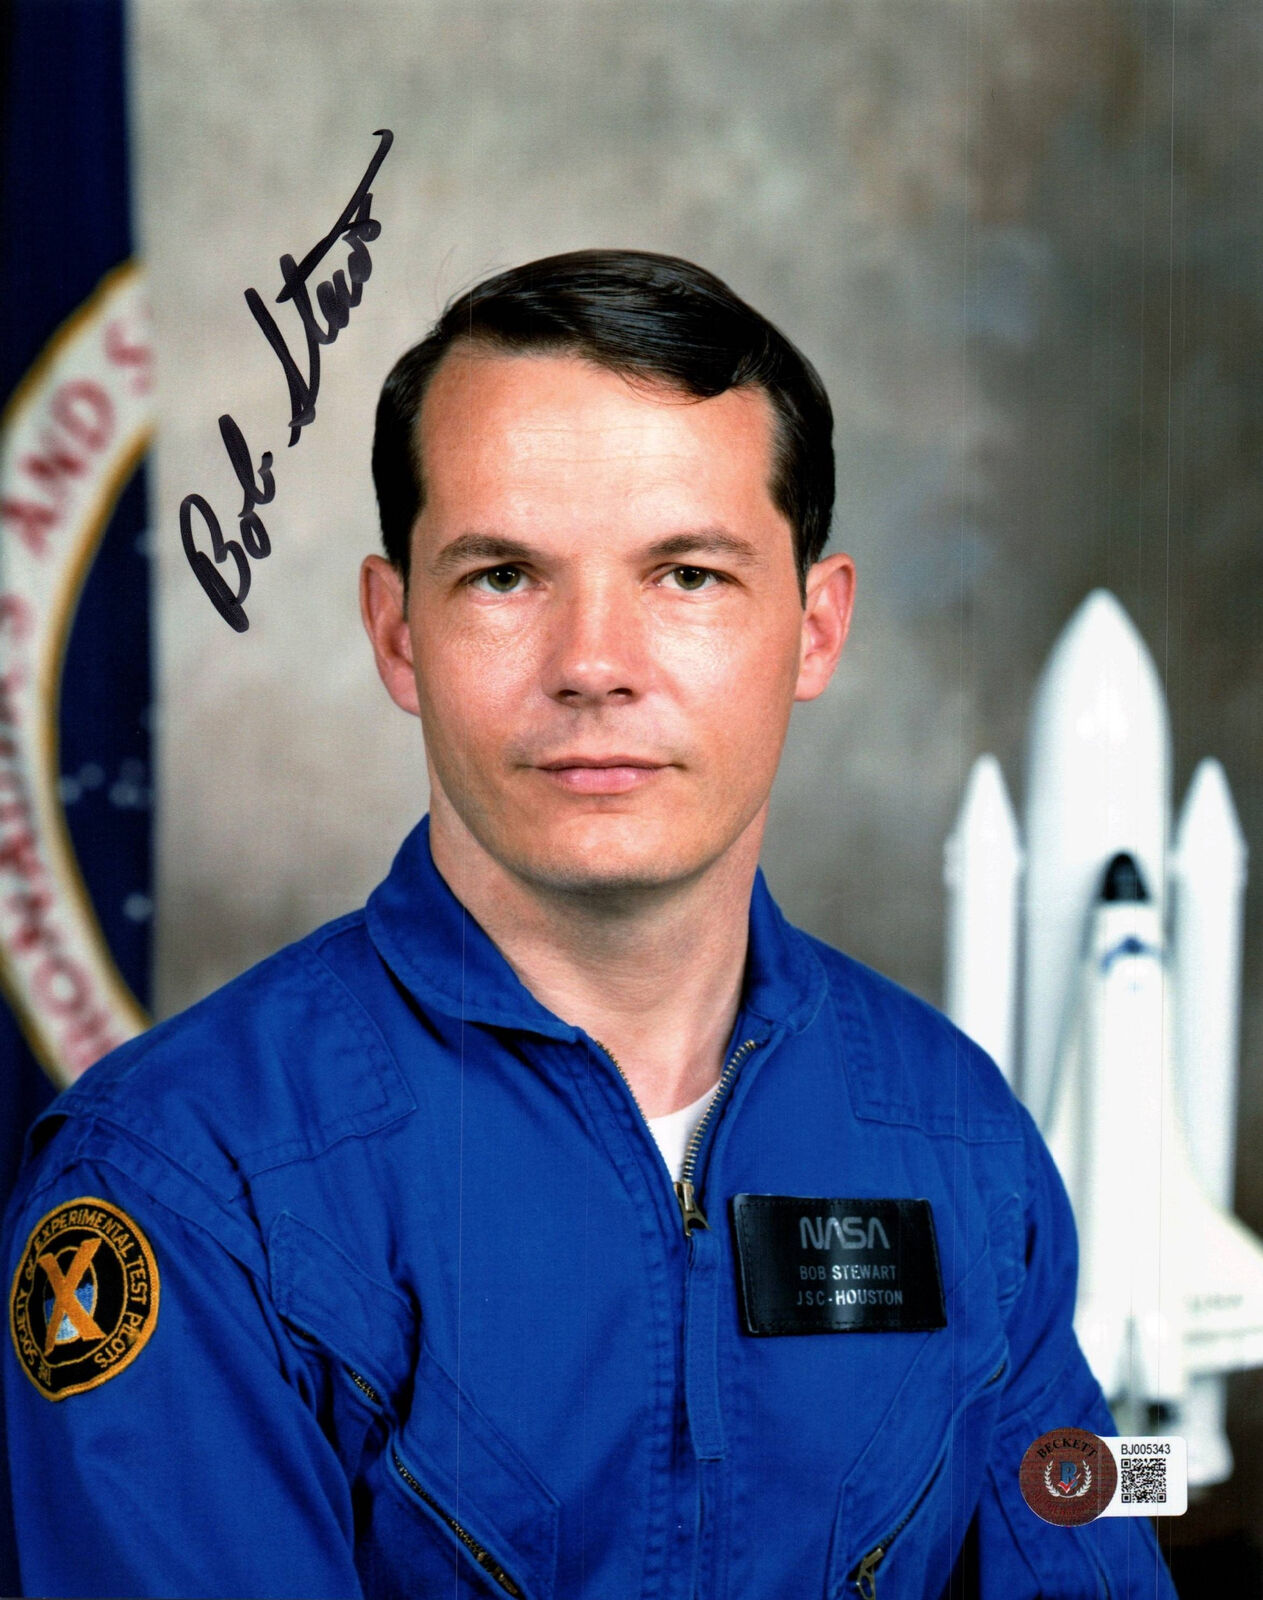 Robert Bob Stewart Signed 8x10 Photo Beckett Bas Coa Nasa Astronaut 1